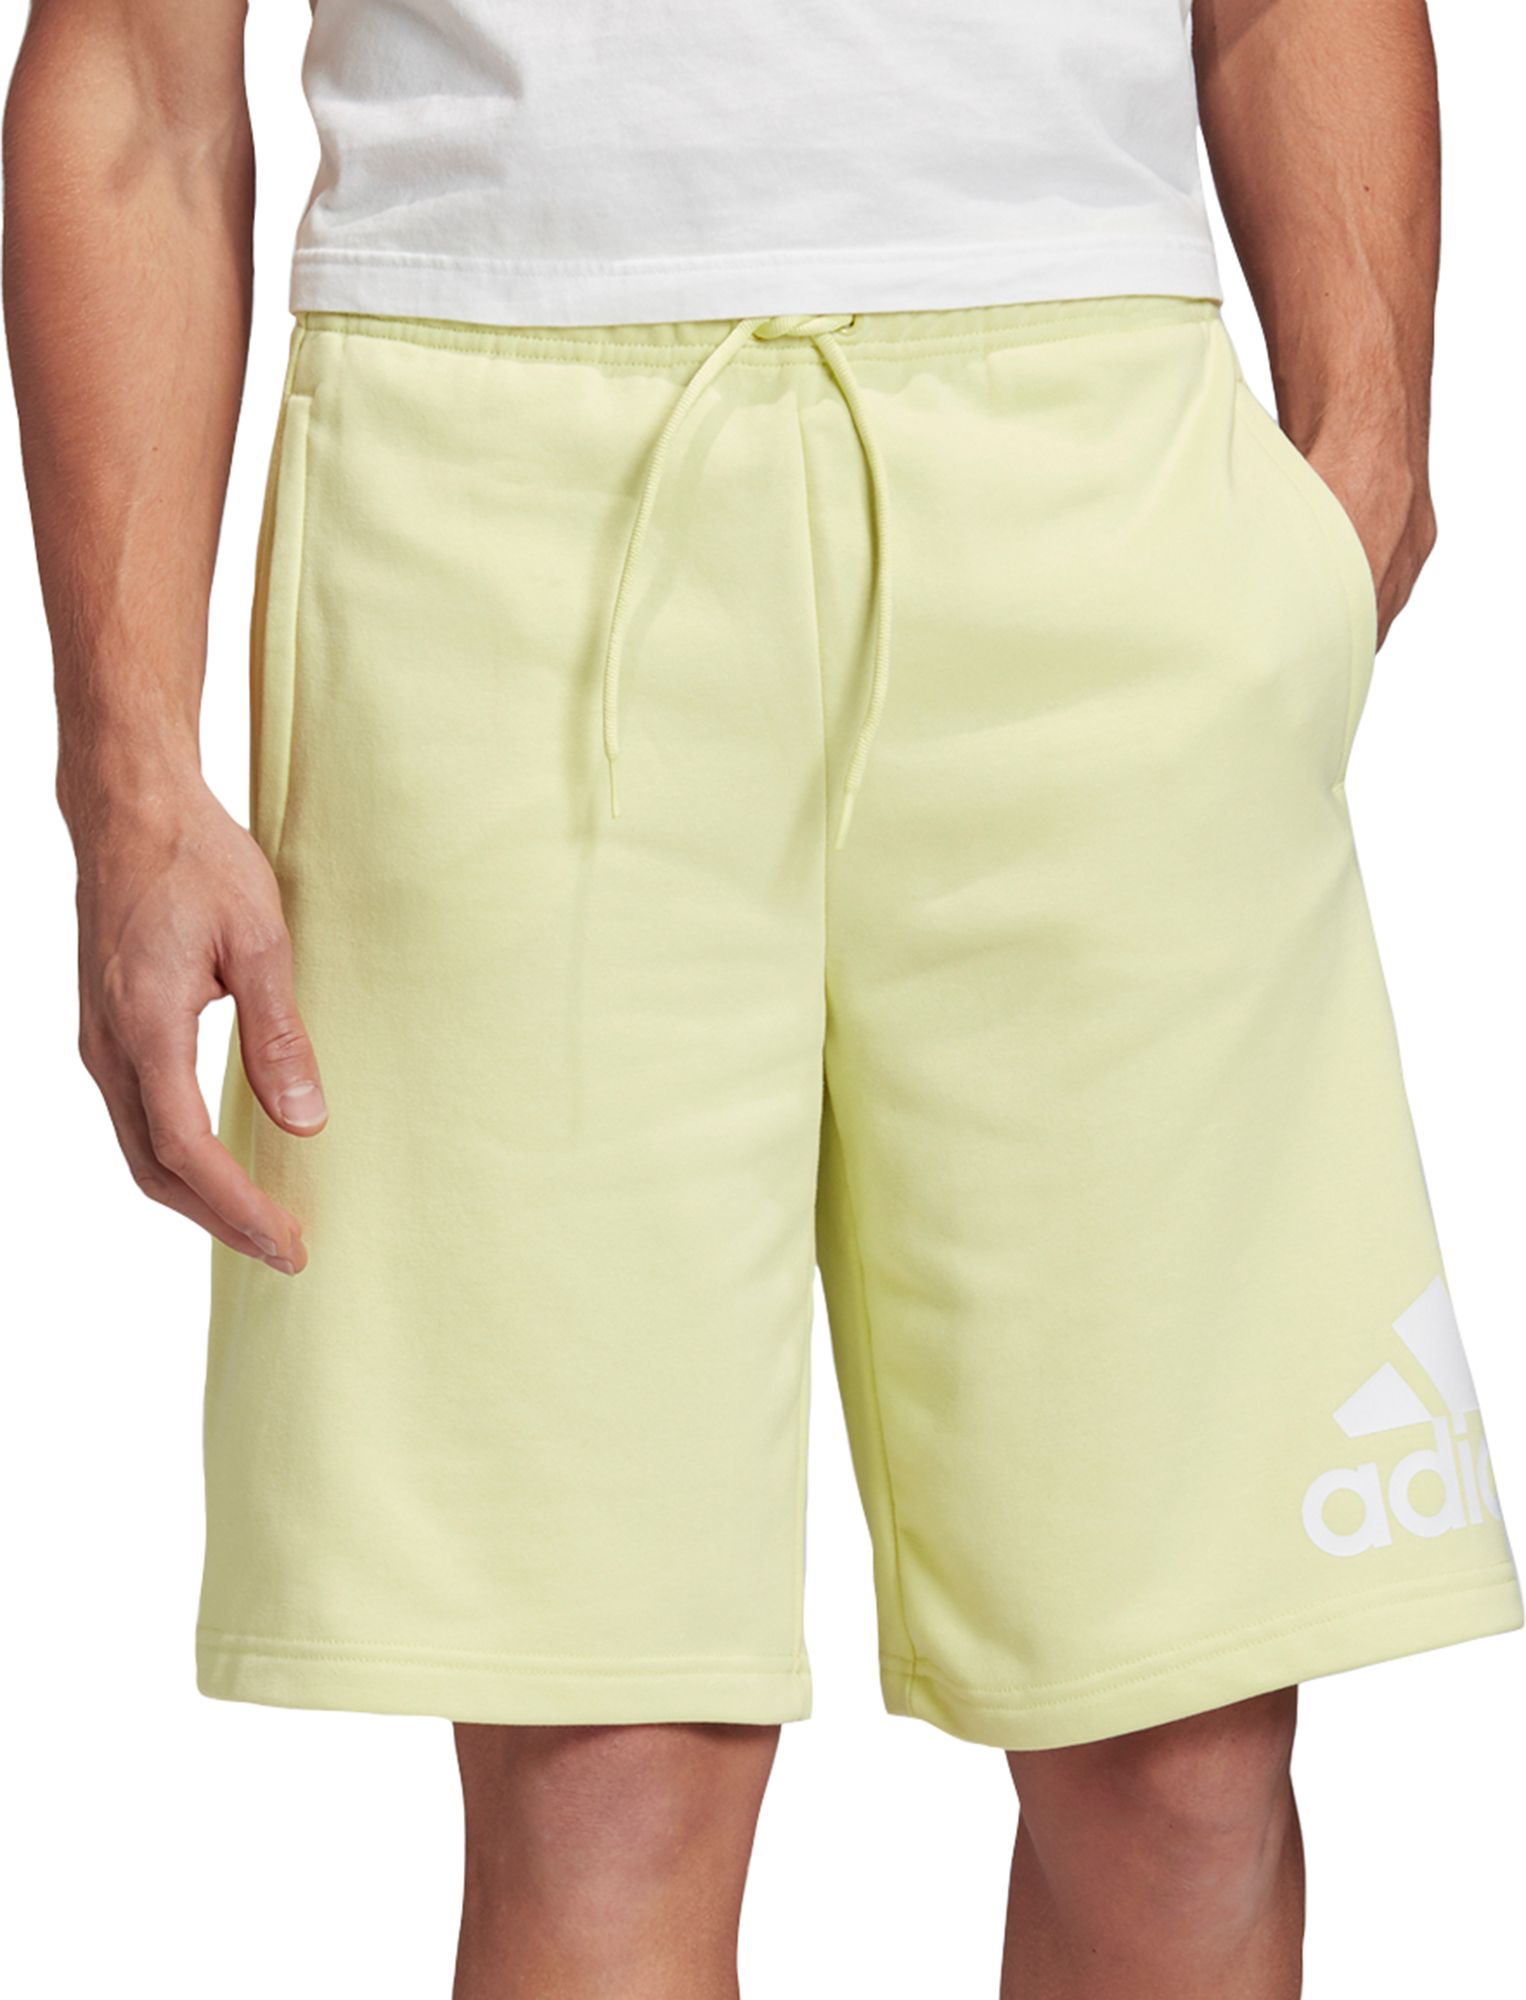 adidas cloth shorts